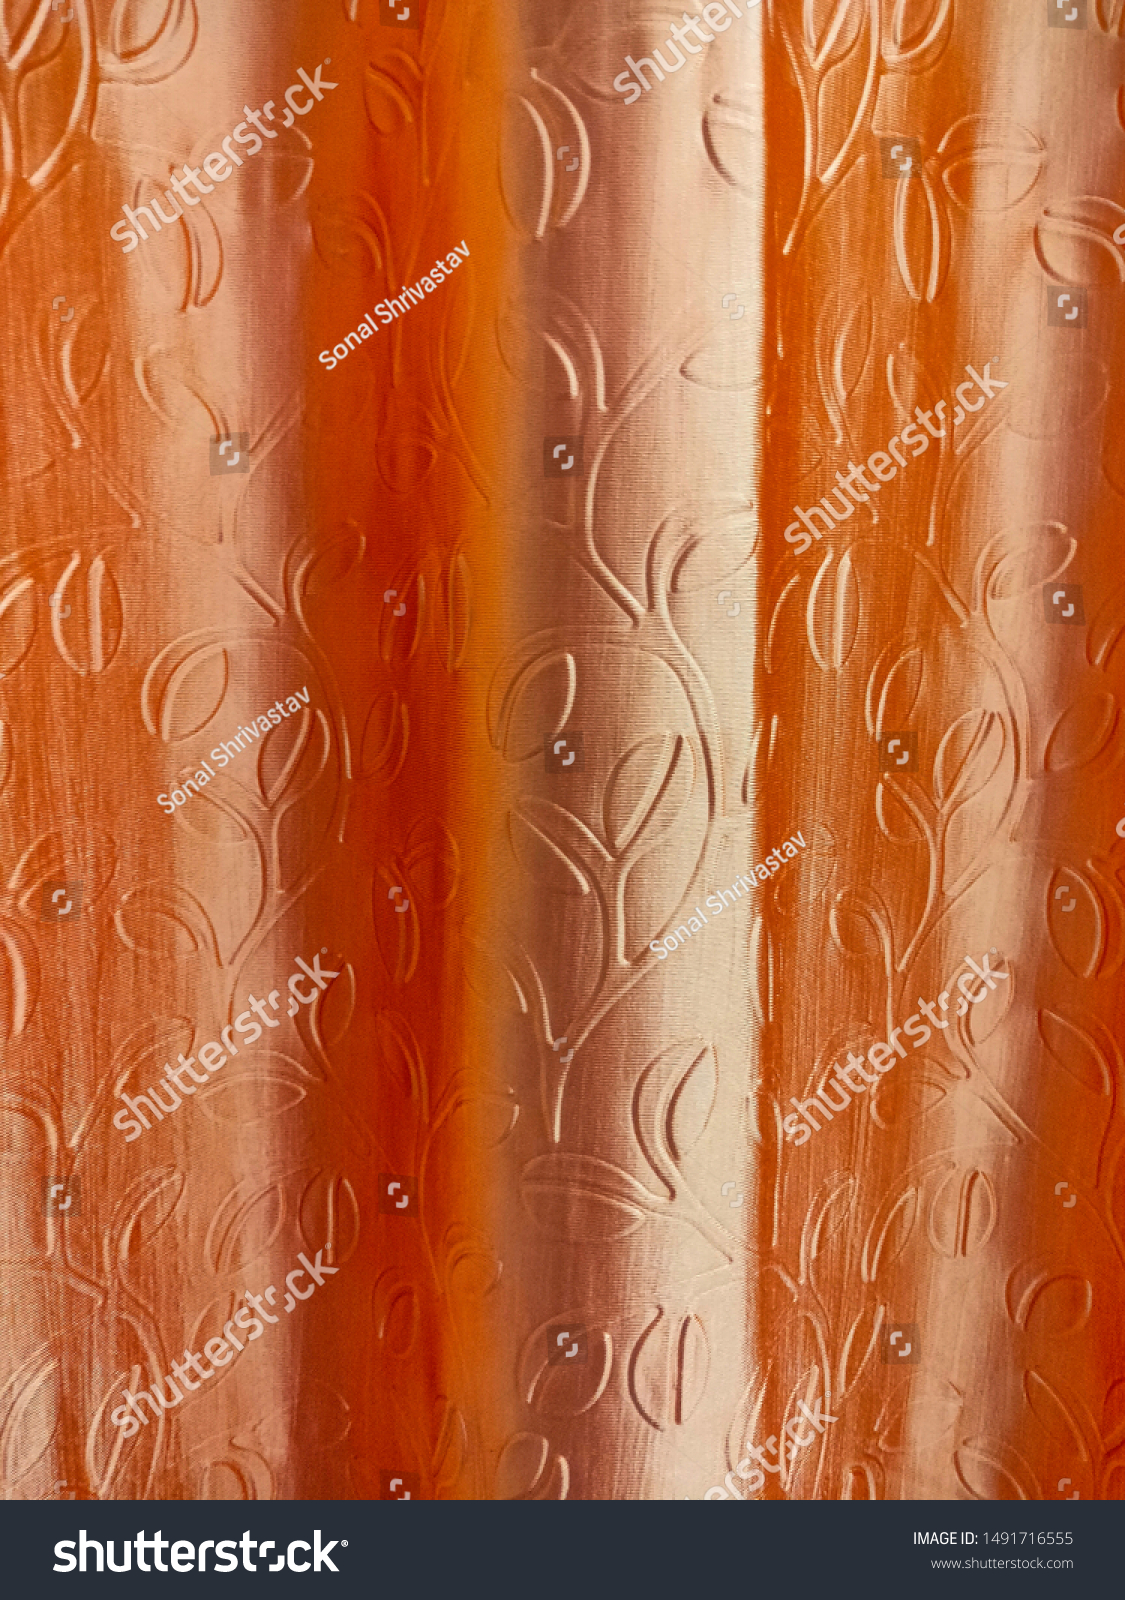 orange curtain material